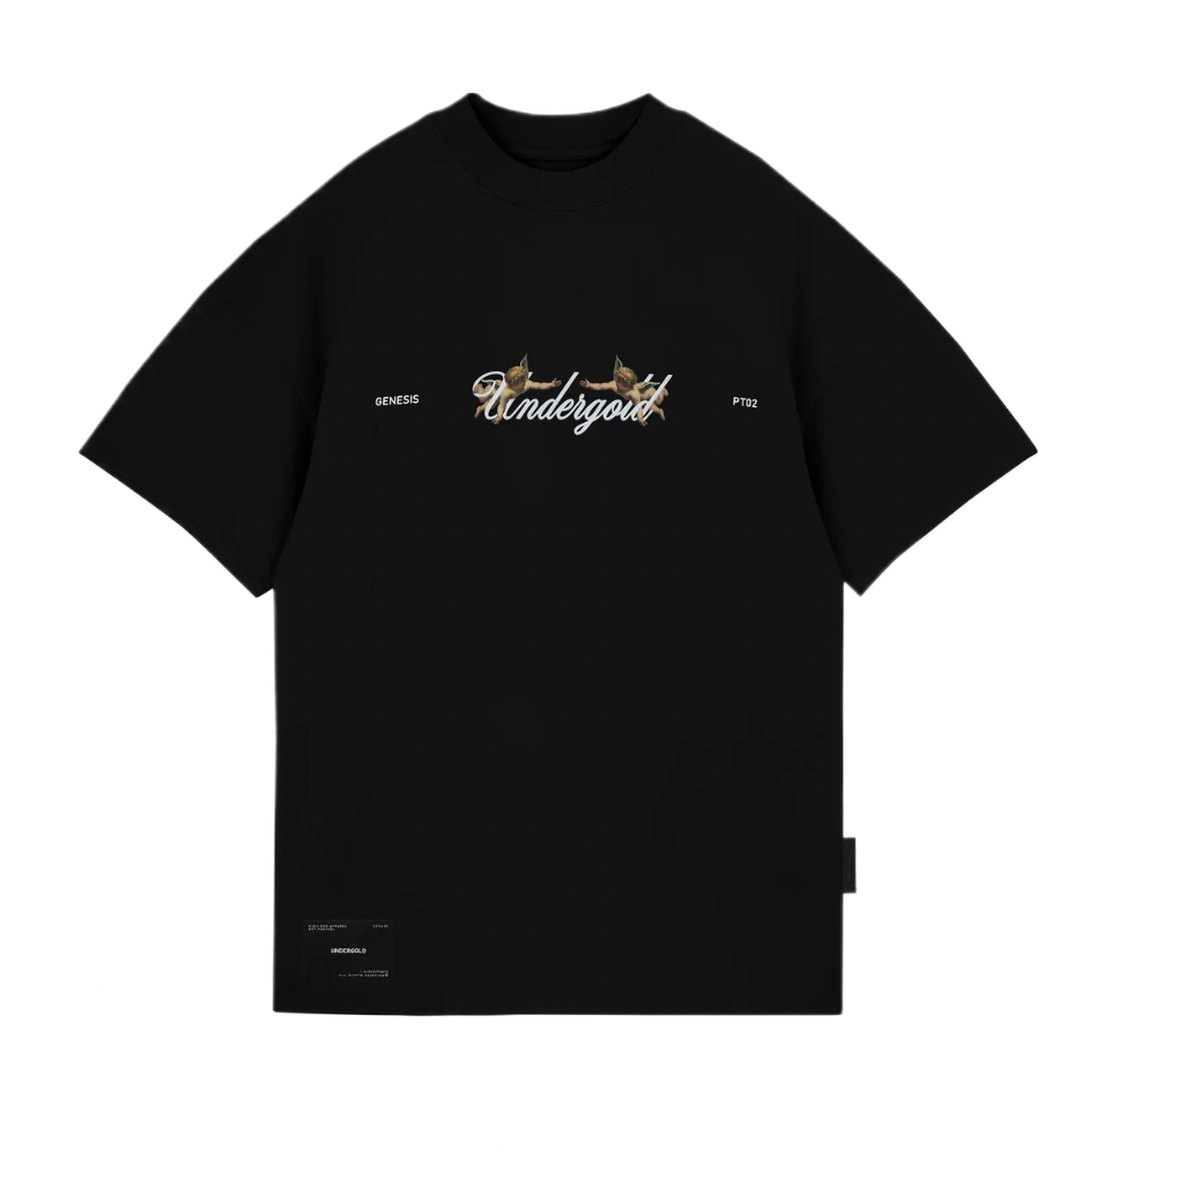 Undegold Genesis PT02 Cherubs T-shirt Black